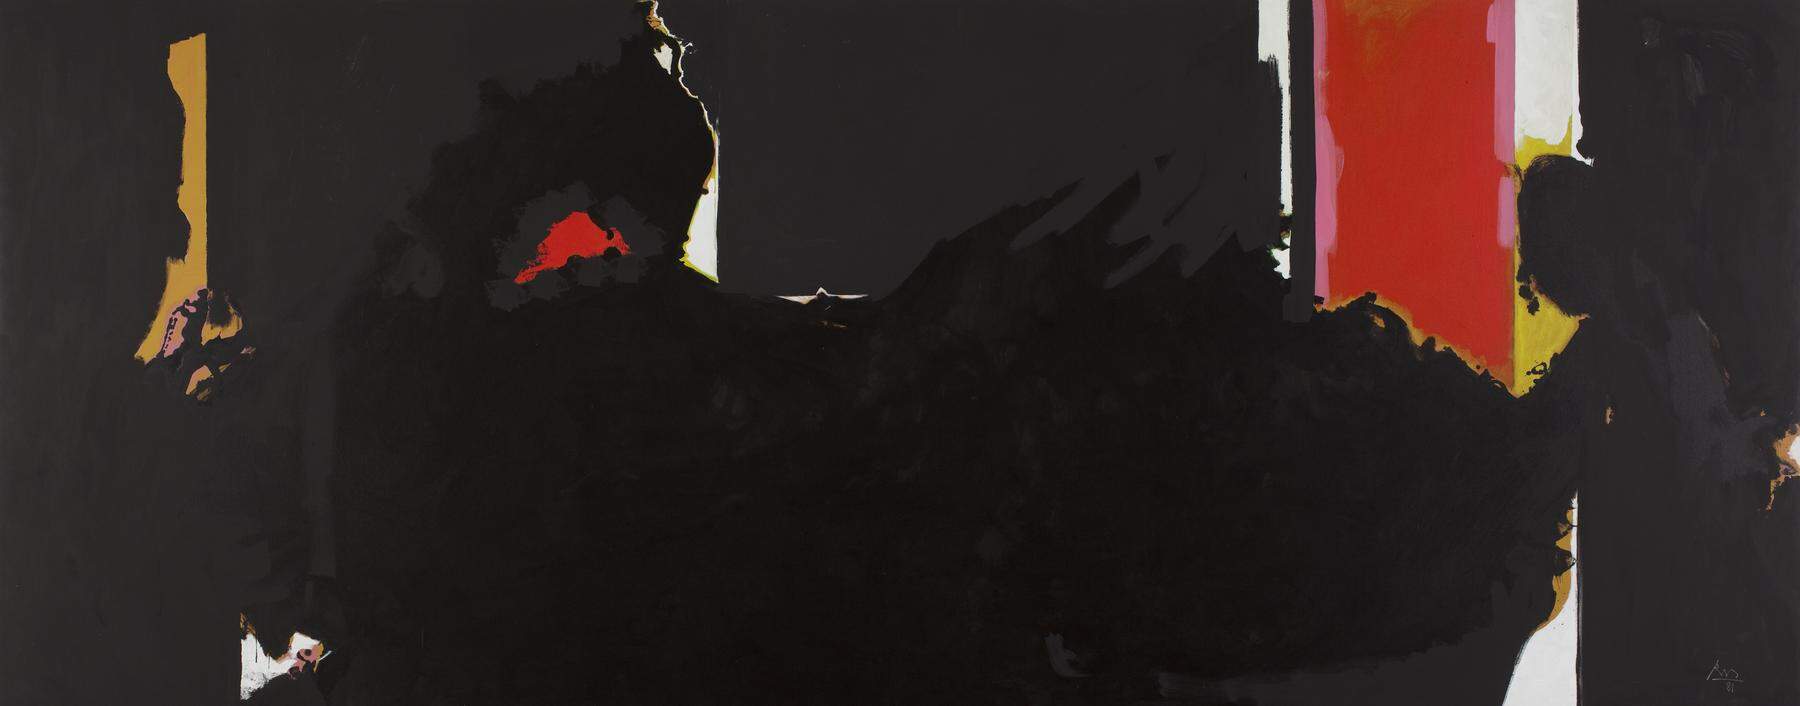 In den USA hat fast jedes Museum Werke von ihm: Face of the Night (For Octavio Paz), um 1977-79/1981. 